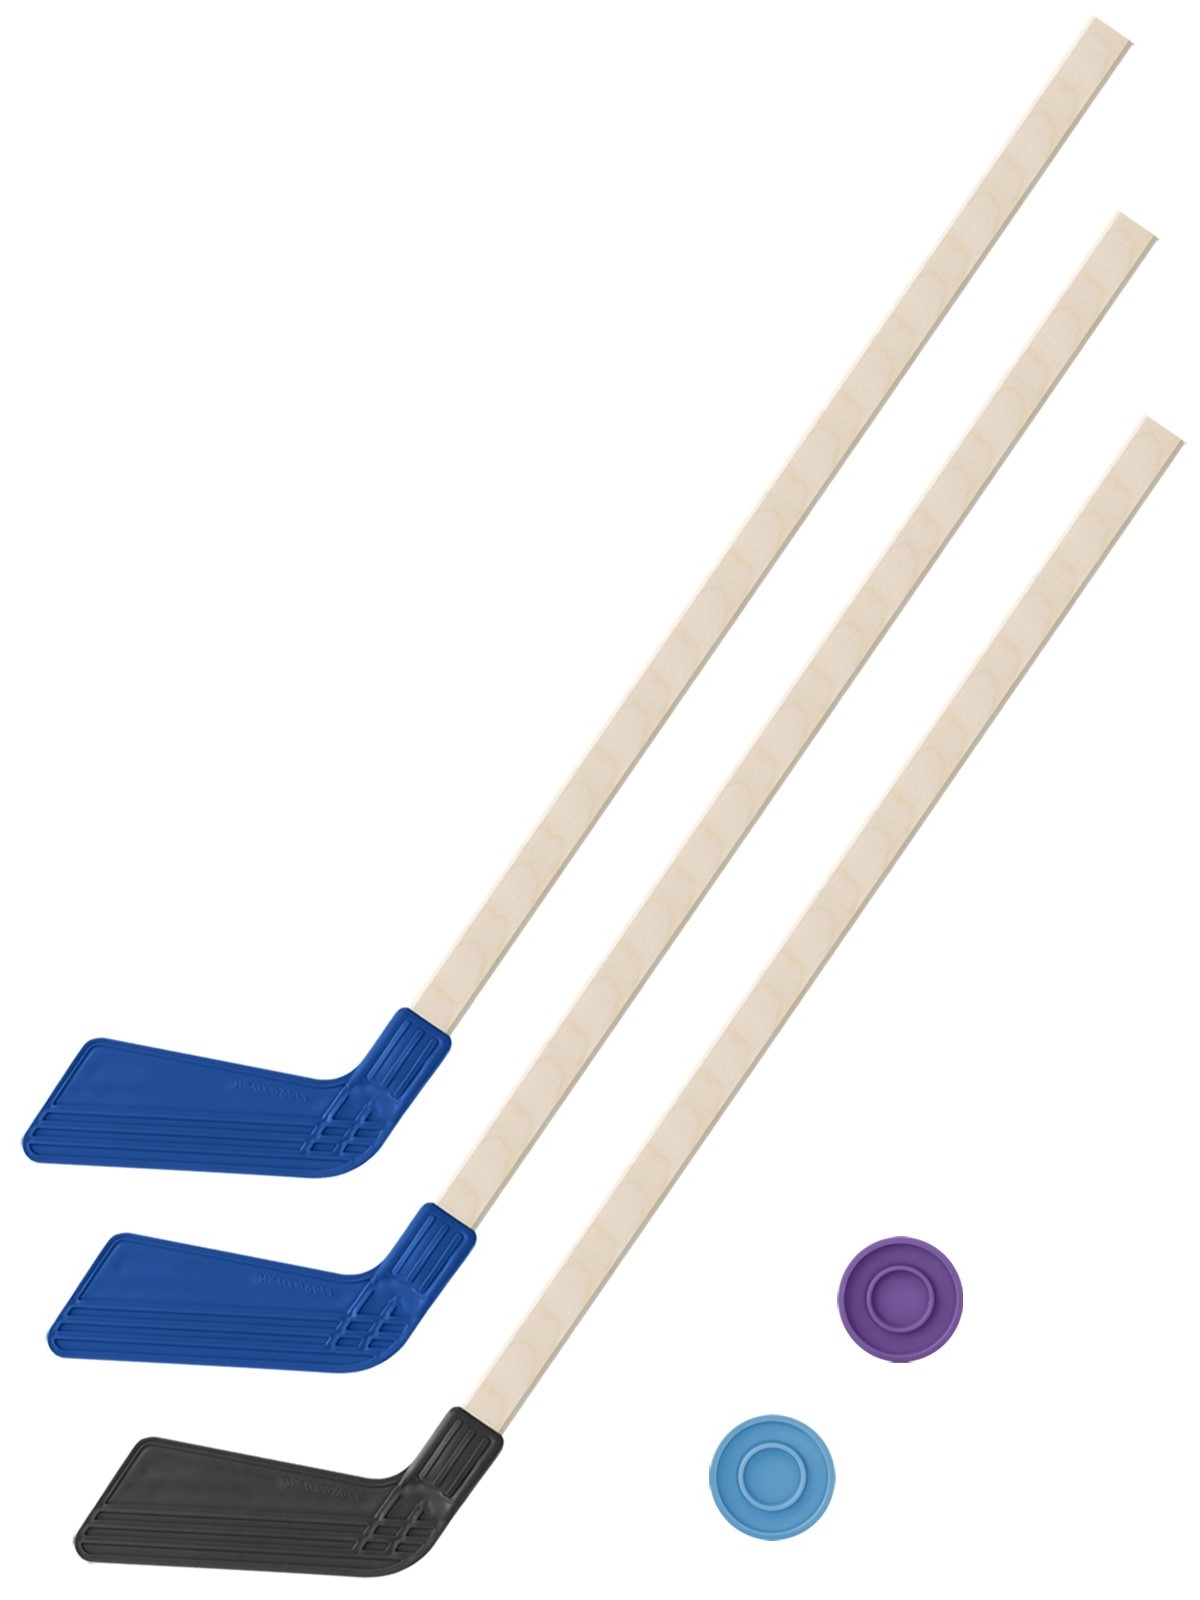 Детский хоккейный набор Задира-плюс Клюшка 80 см 3шт (2 синих, 1 черная) + 2 шайбы нордпласт набор хоккейный клуб 2 клюшки 2 шайбы 1020 1